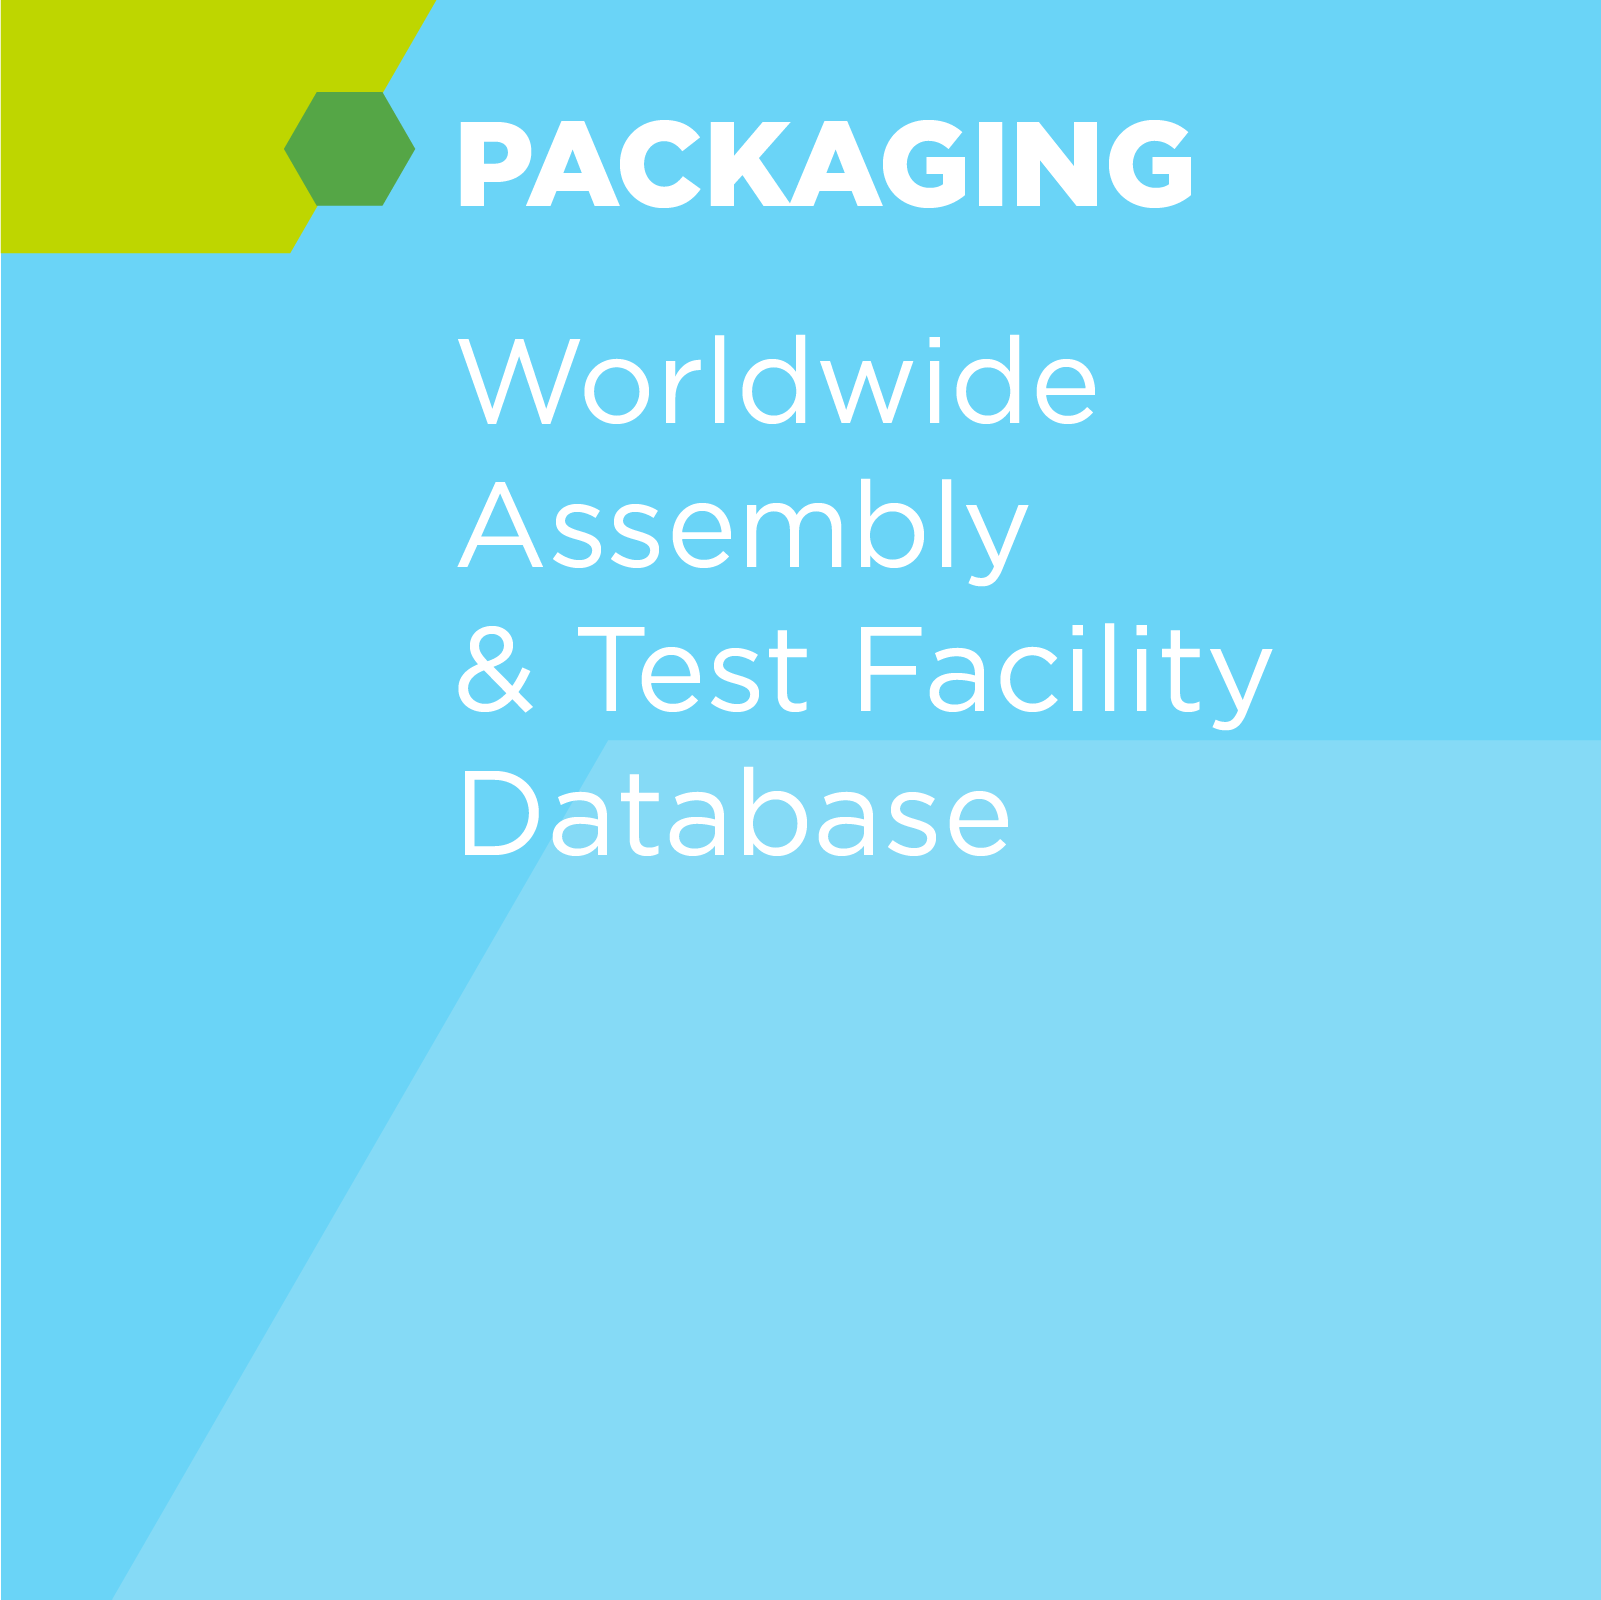 Worldwide Assembly & Test Facility Database (IDM + OSAT)